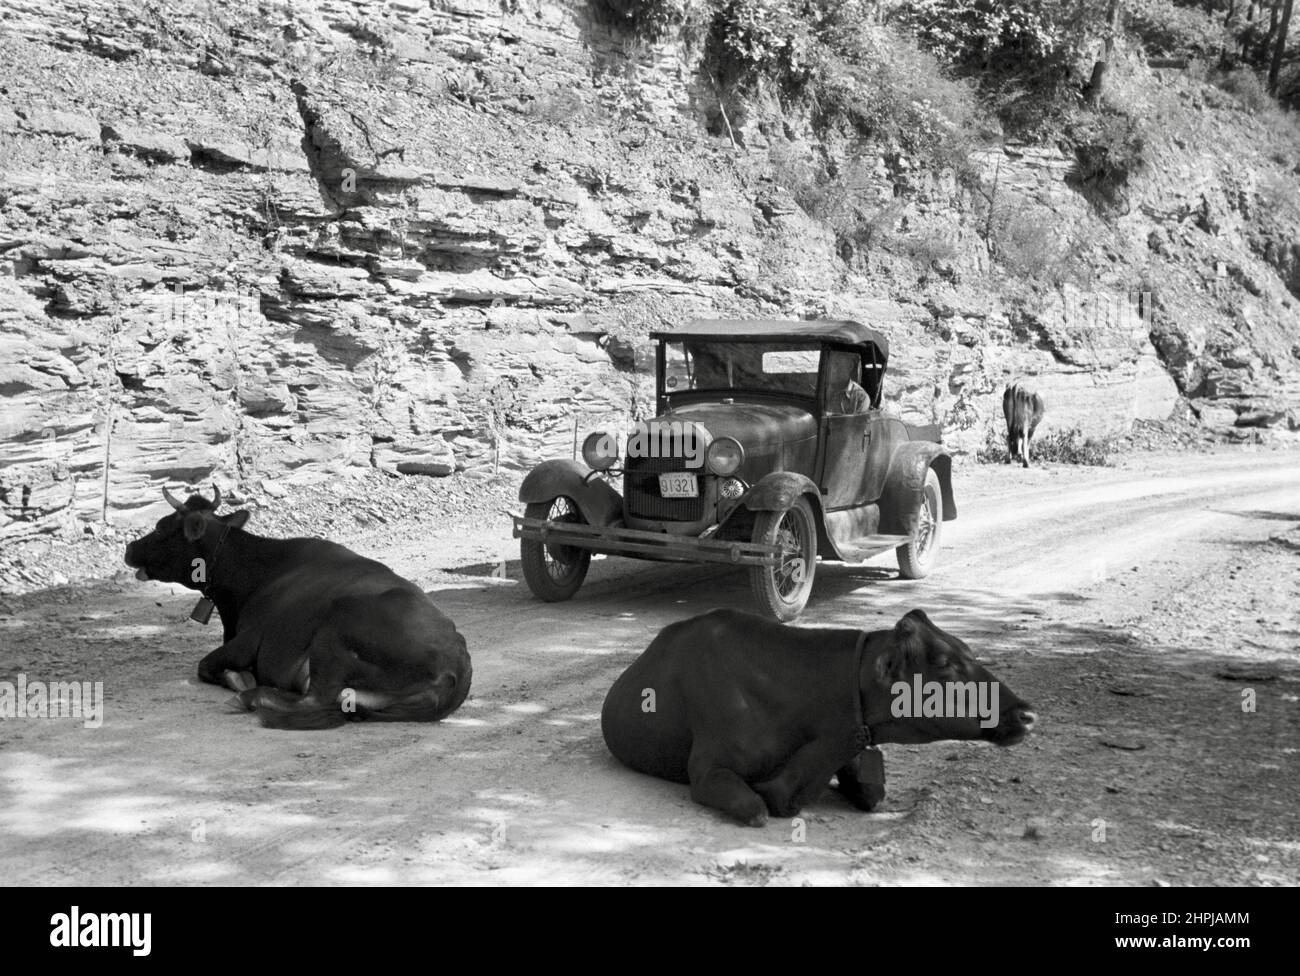 Marion Post Wolcott - cattle blocking passage on Kentucky mountain road Stock Photo